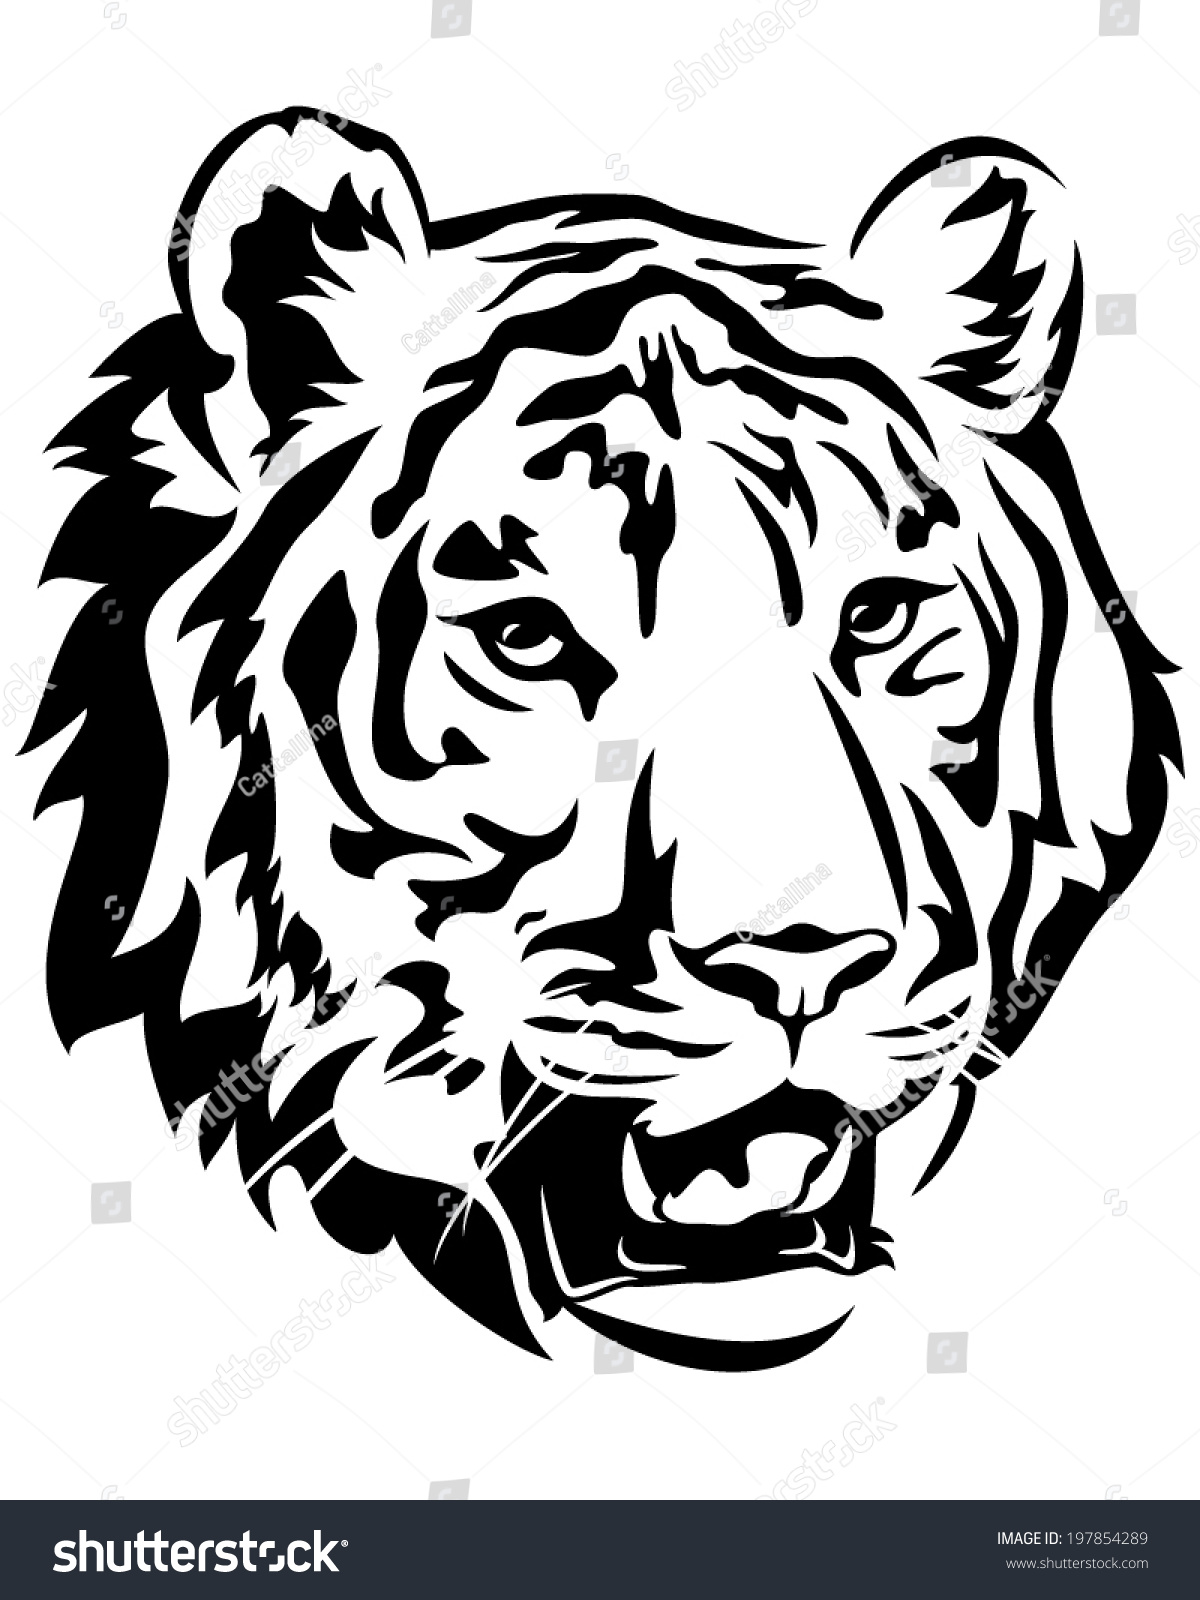 Tiger Head Emblem Design - Big Cat Black And White Vector Outline ...